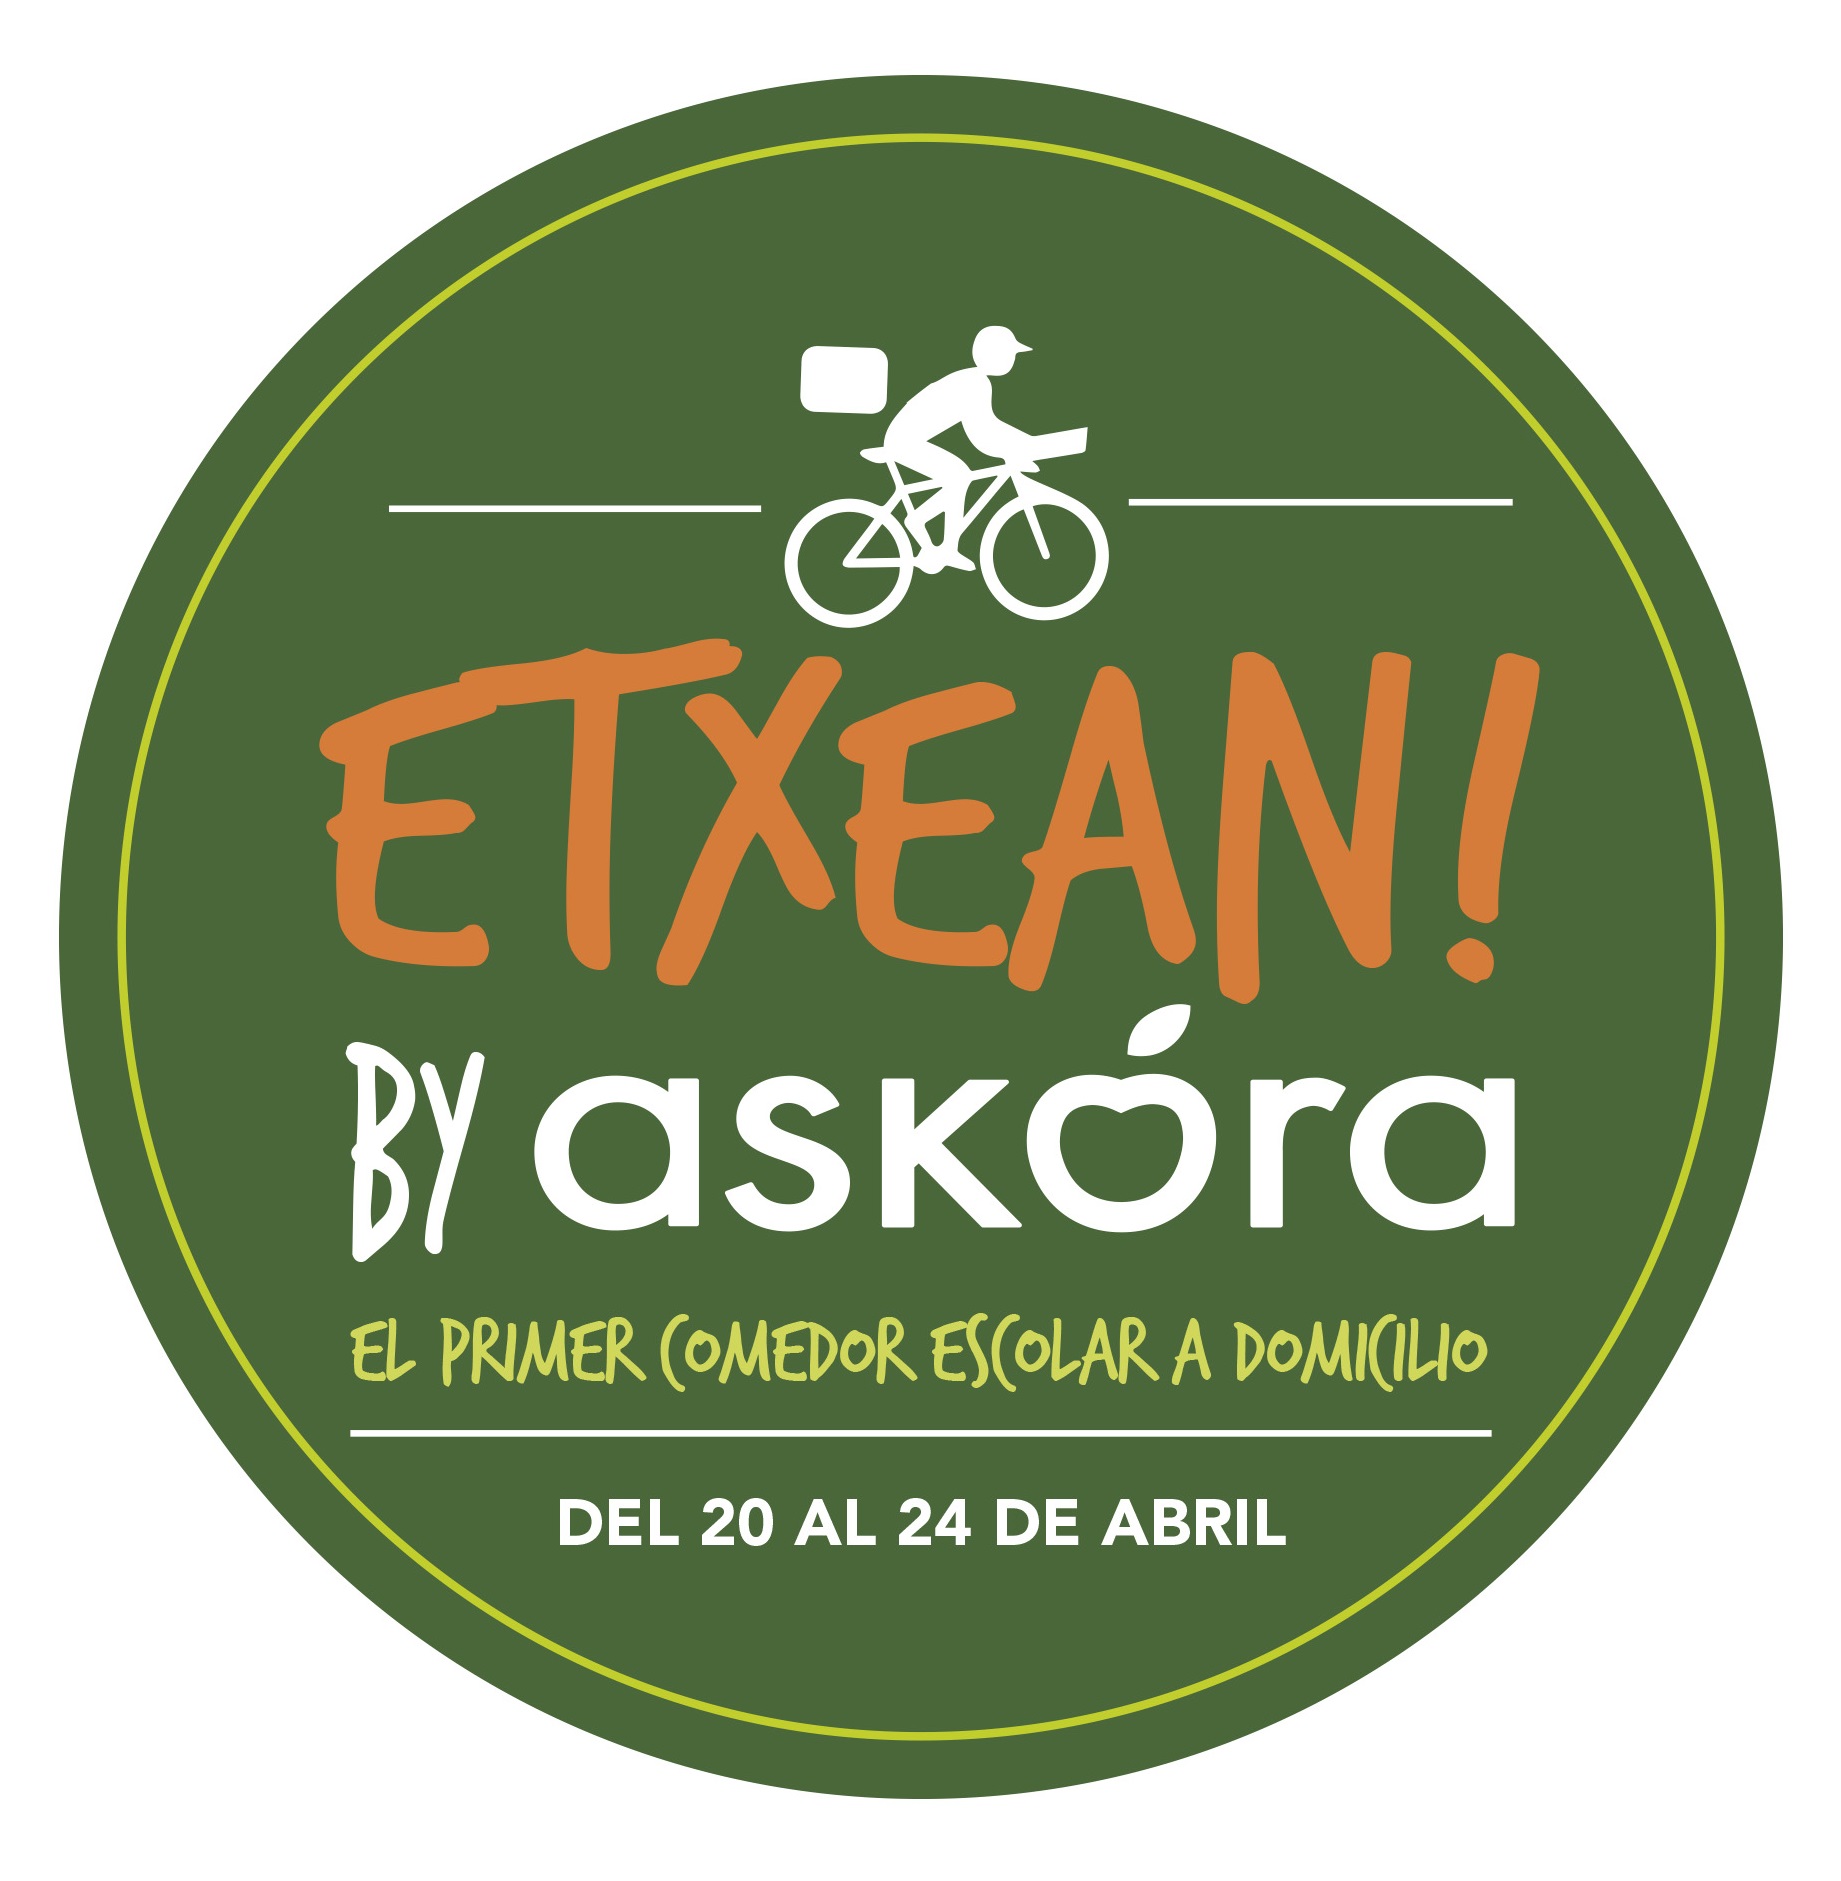 ASKORA lanza su proyecto “ETXEAN BY ASKORA”, el  primer comedor escolar a domicilio.